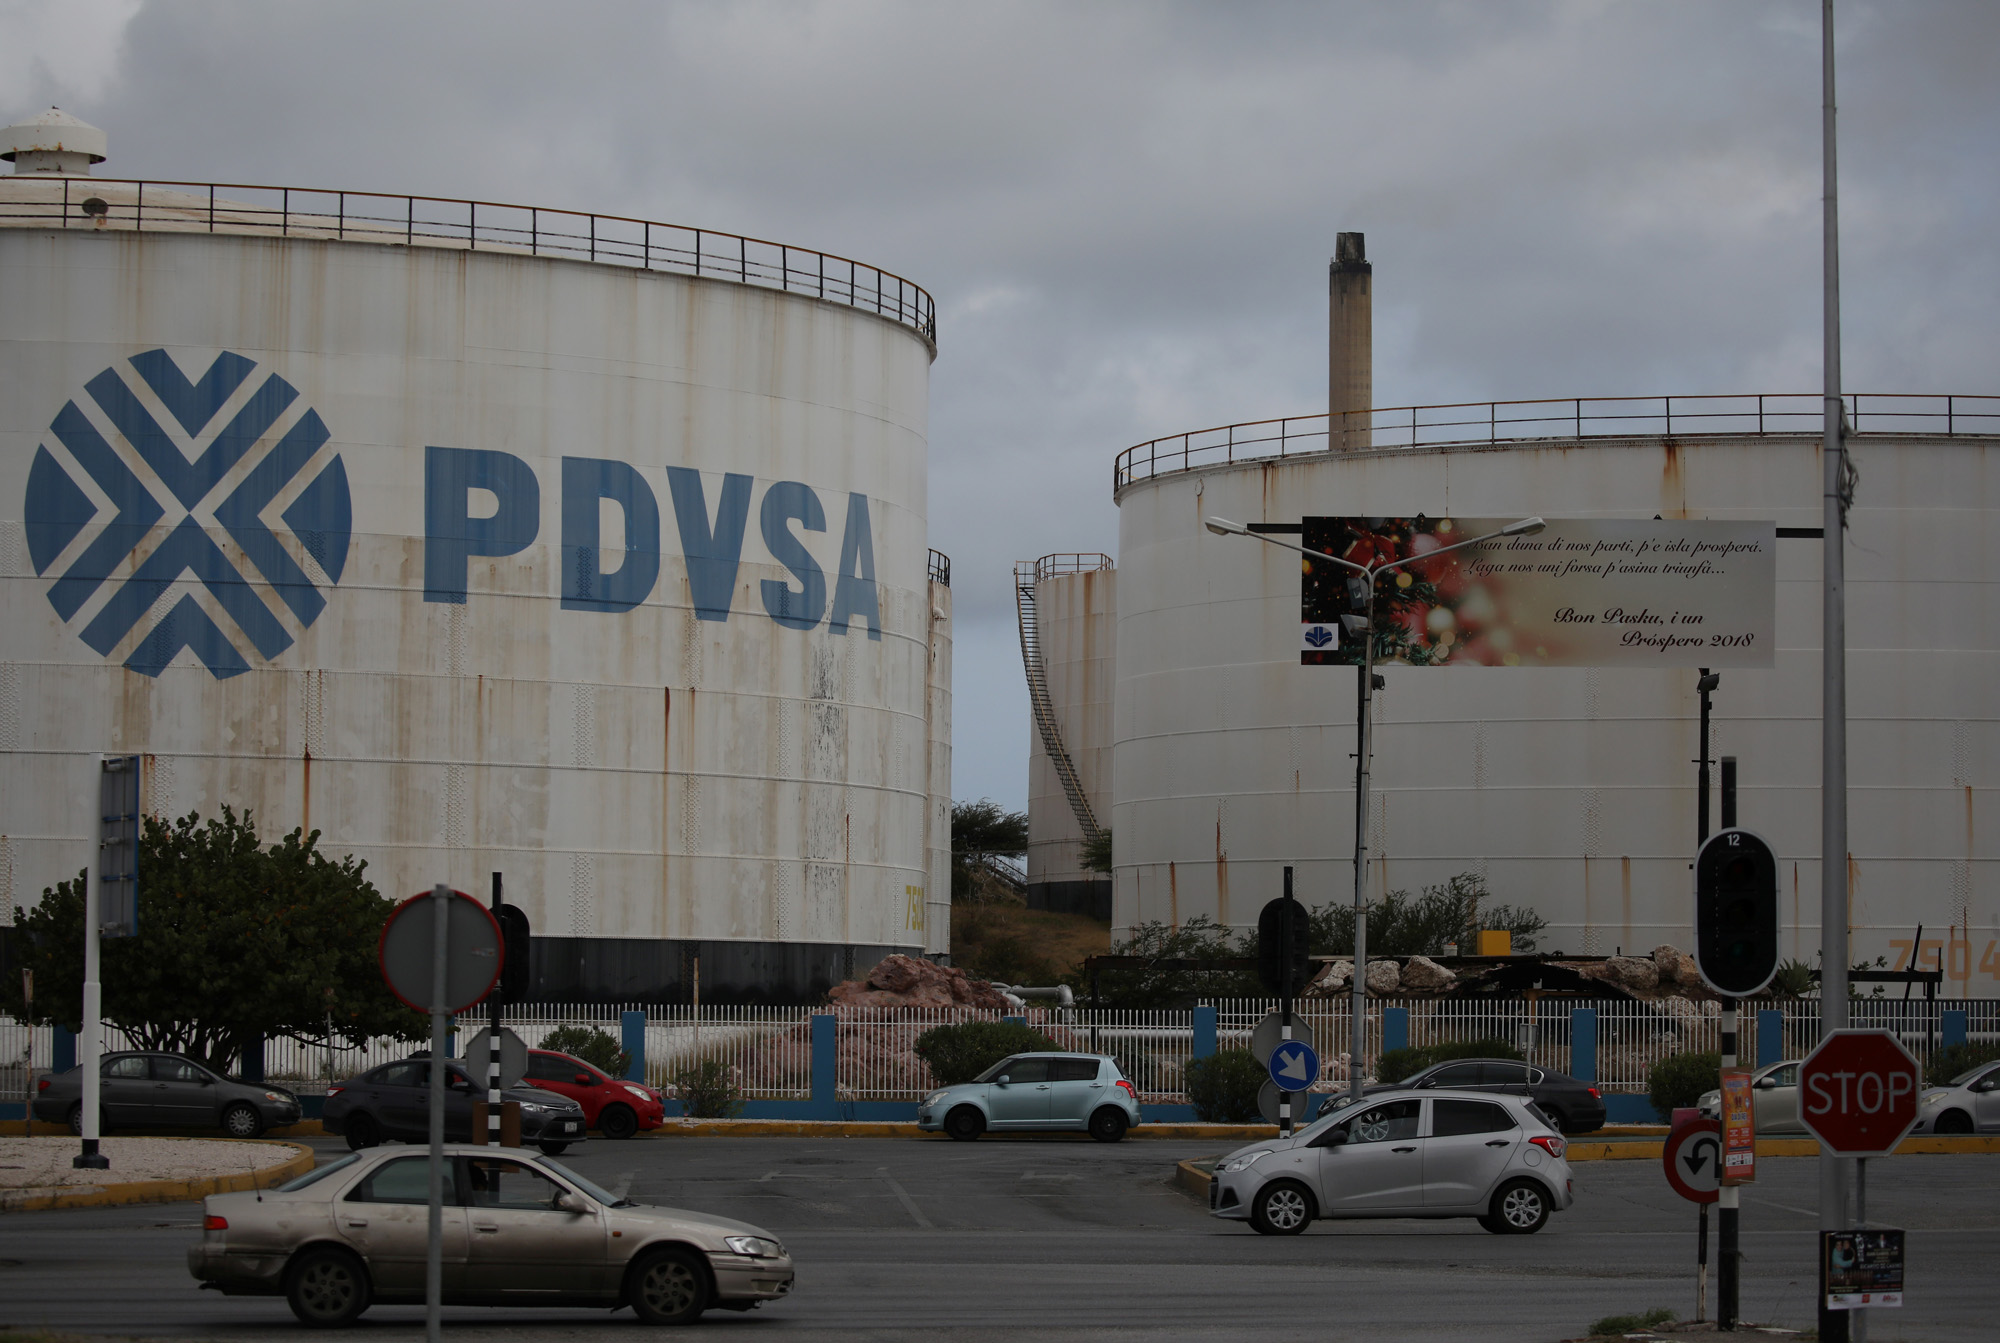 Reuters: Motiva, elegida preliminarmente para operar refinería de Curazao en reemplazo de Pdvsa